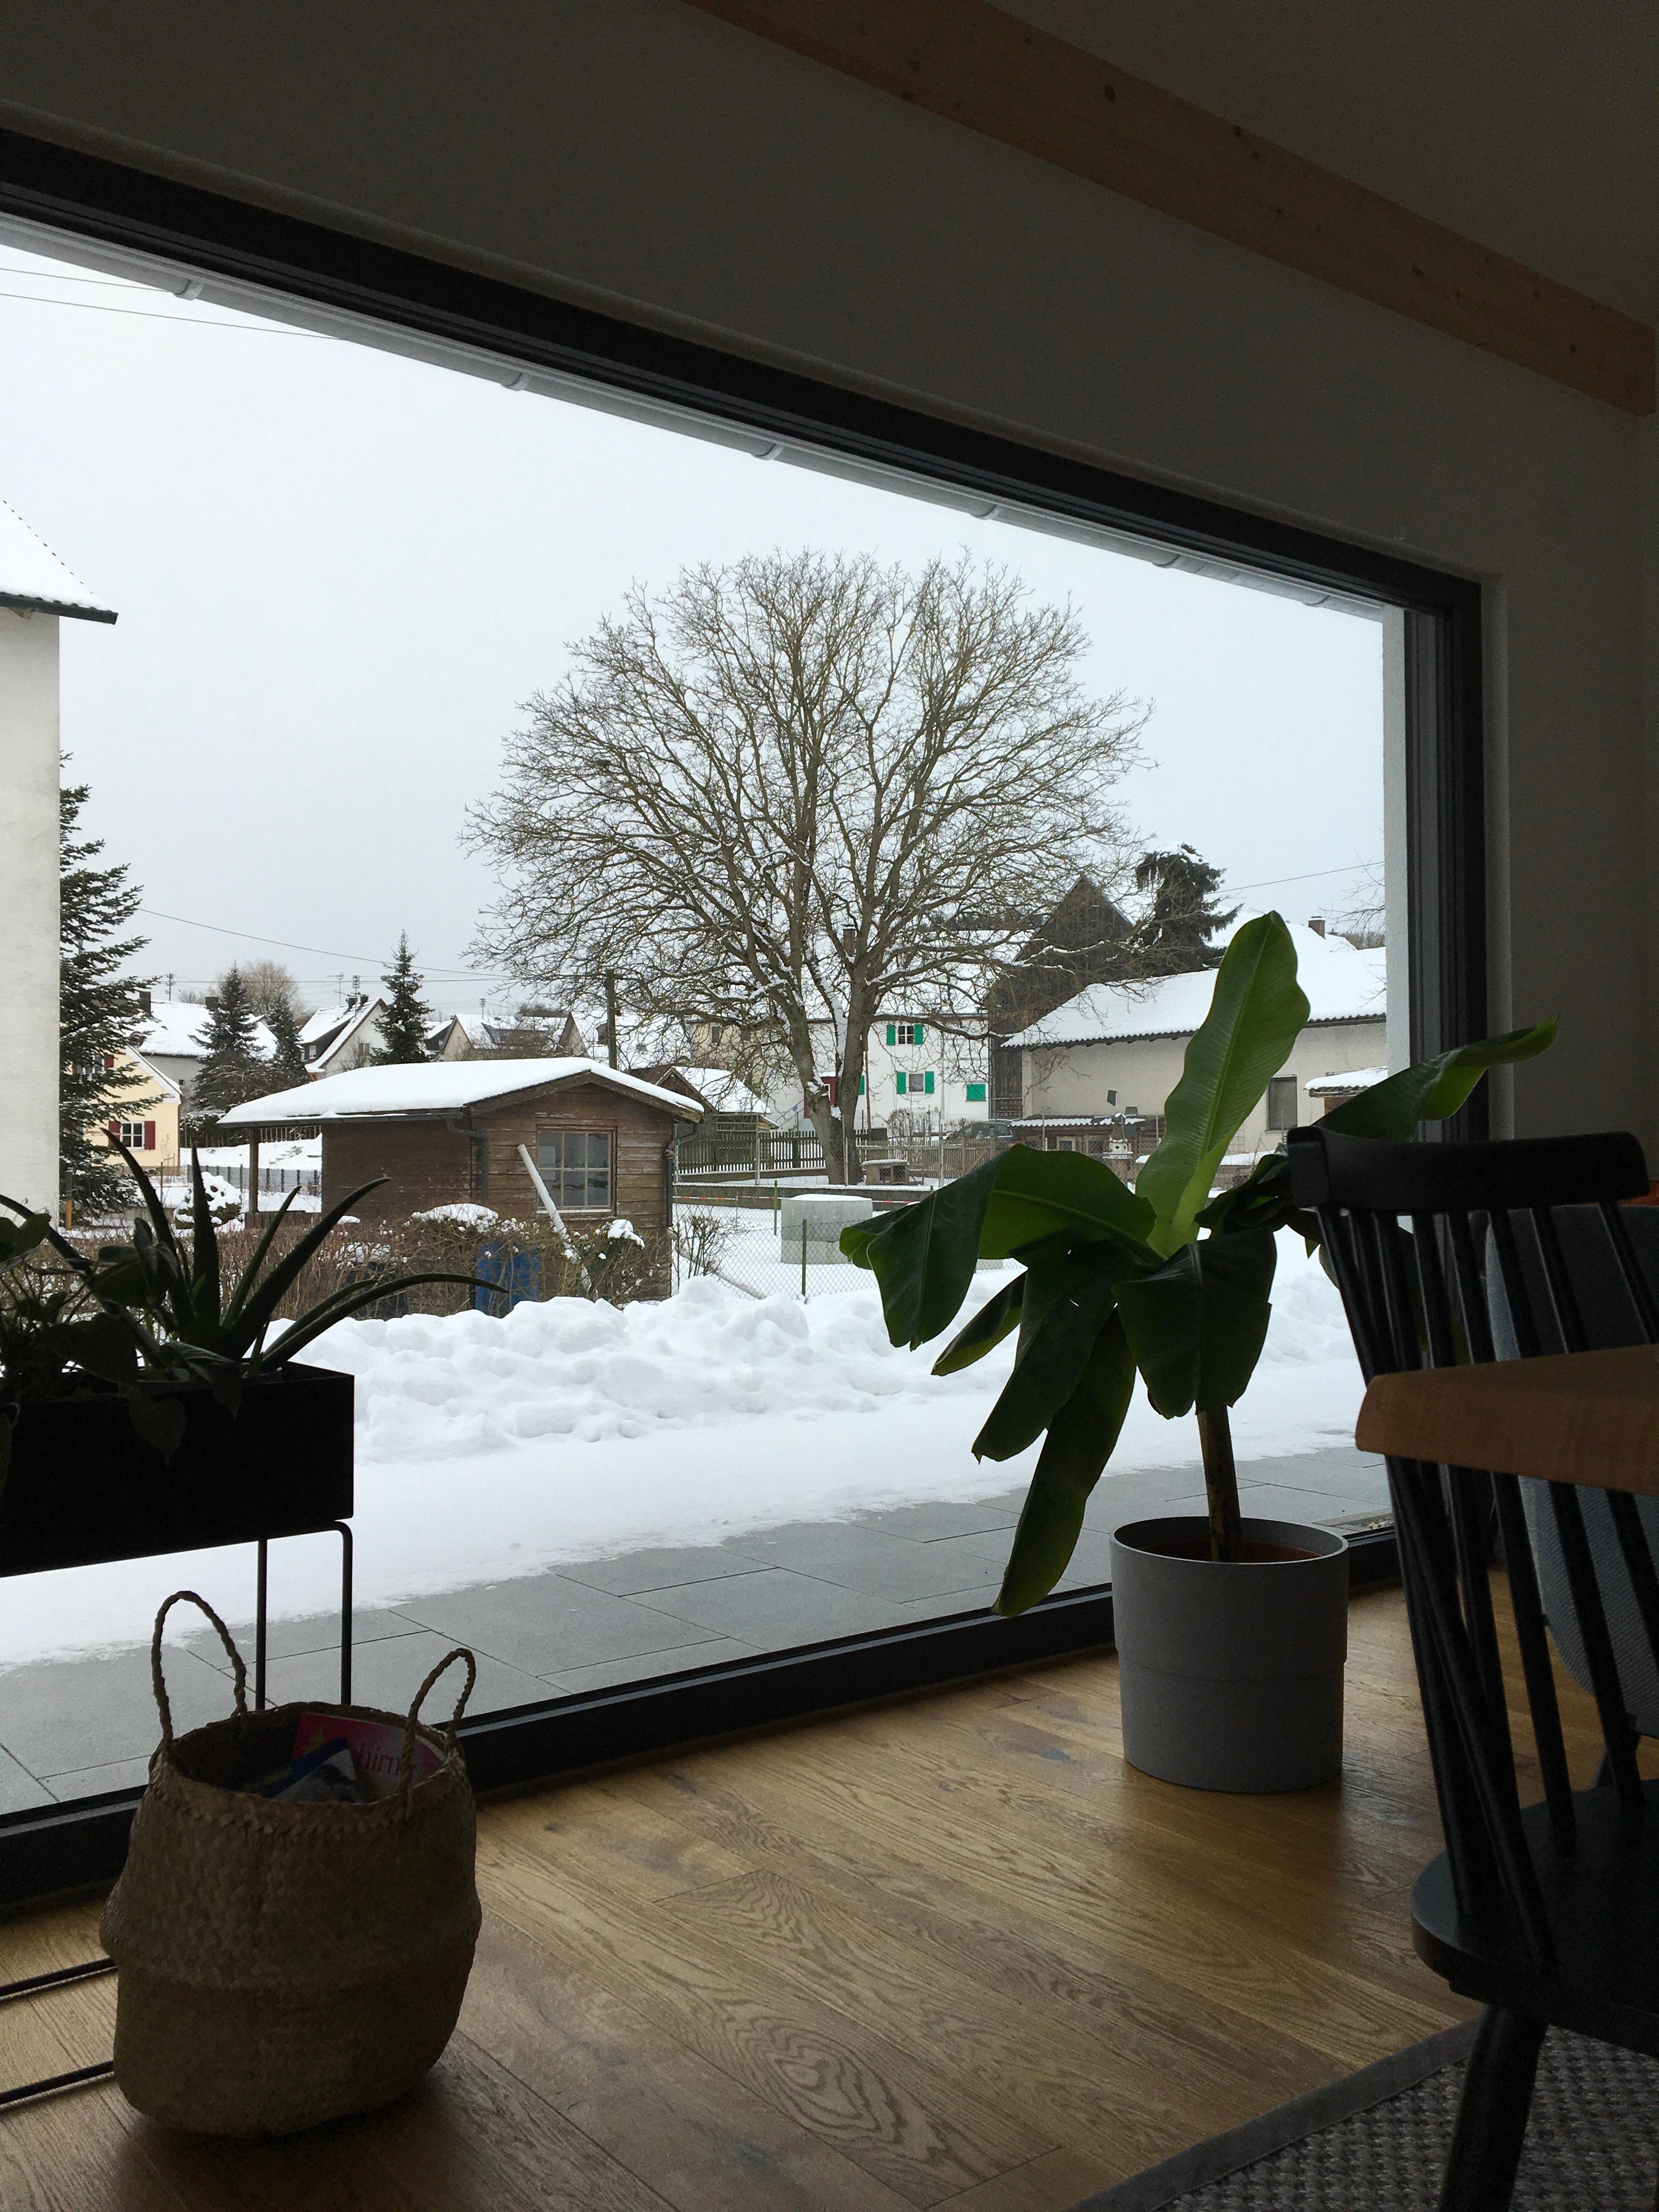 Ich liebe unser Panoramafenster, gerade jetzt #winterwonderland ❄️ #Glasliebe #parkett